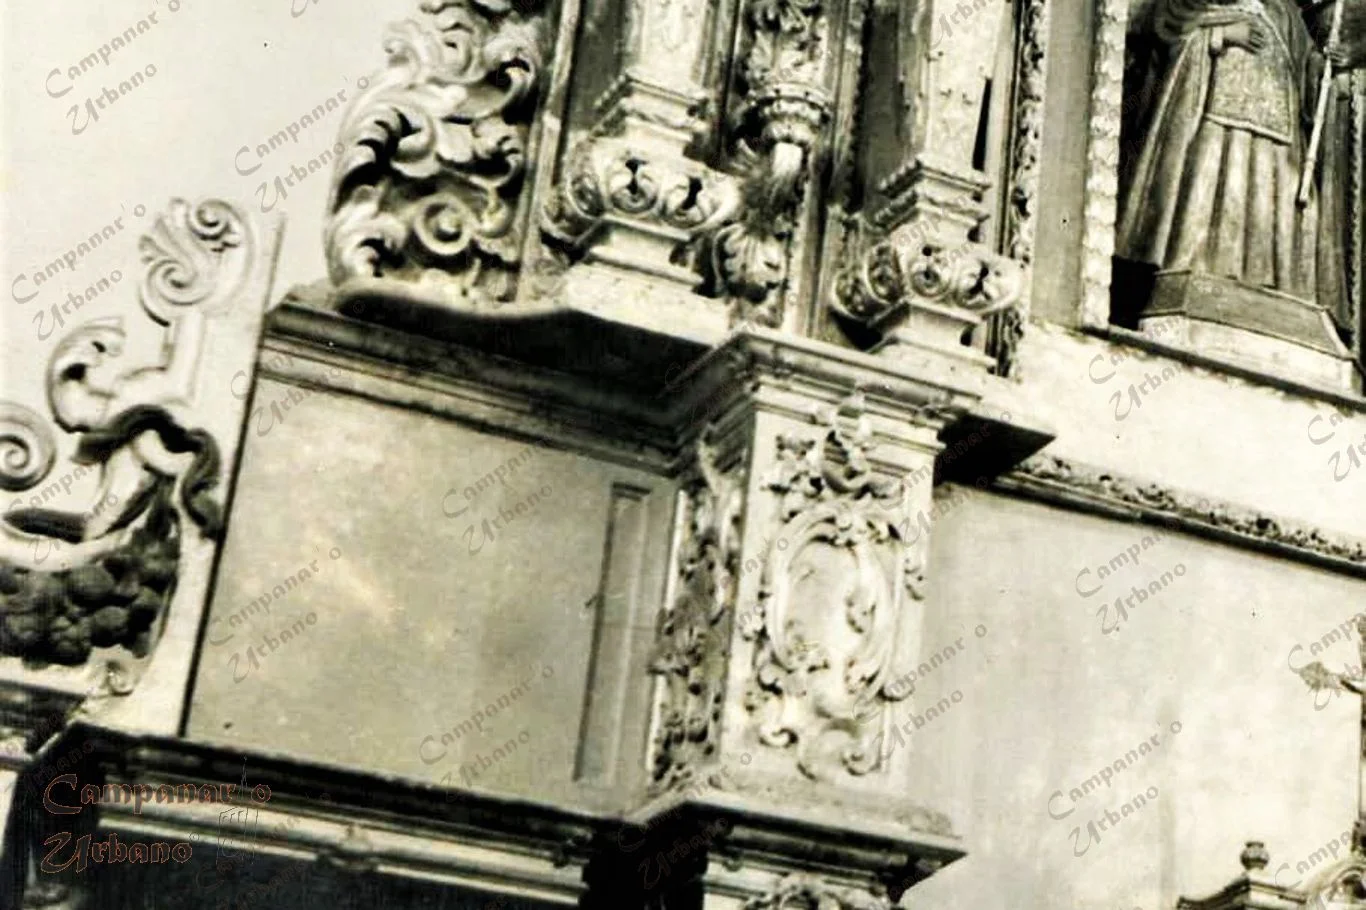 Pilastras del retablo de la Iglesia La Candelaria de Guarenas, las cuales no concuerdan en estilo, posición y tamaño